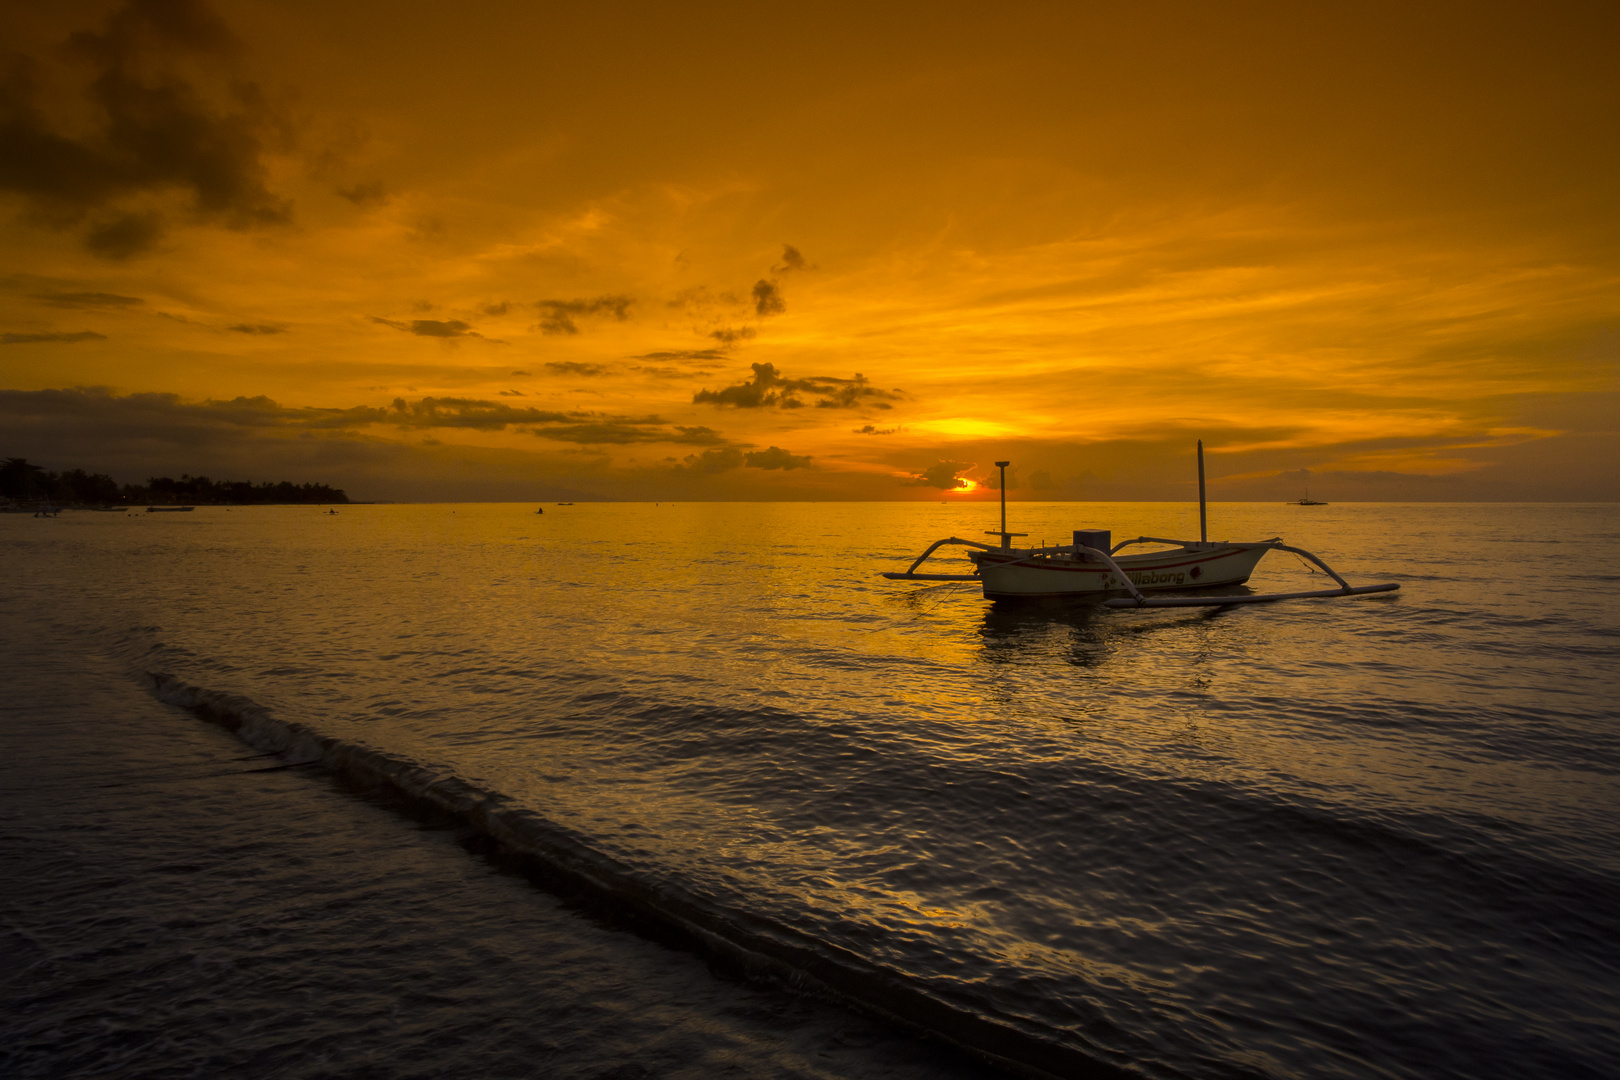  Bali  Sunset Foto Bild  asia east asia urlaub Bilder  